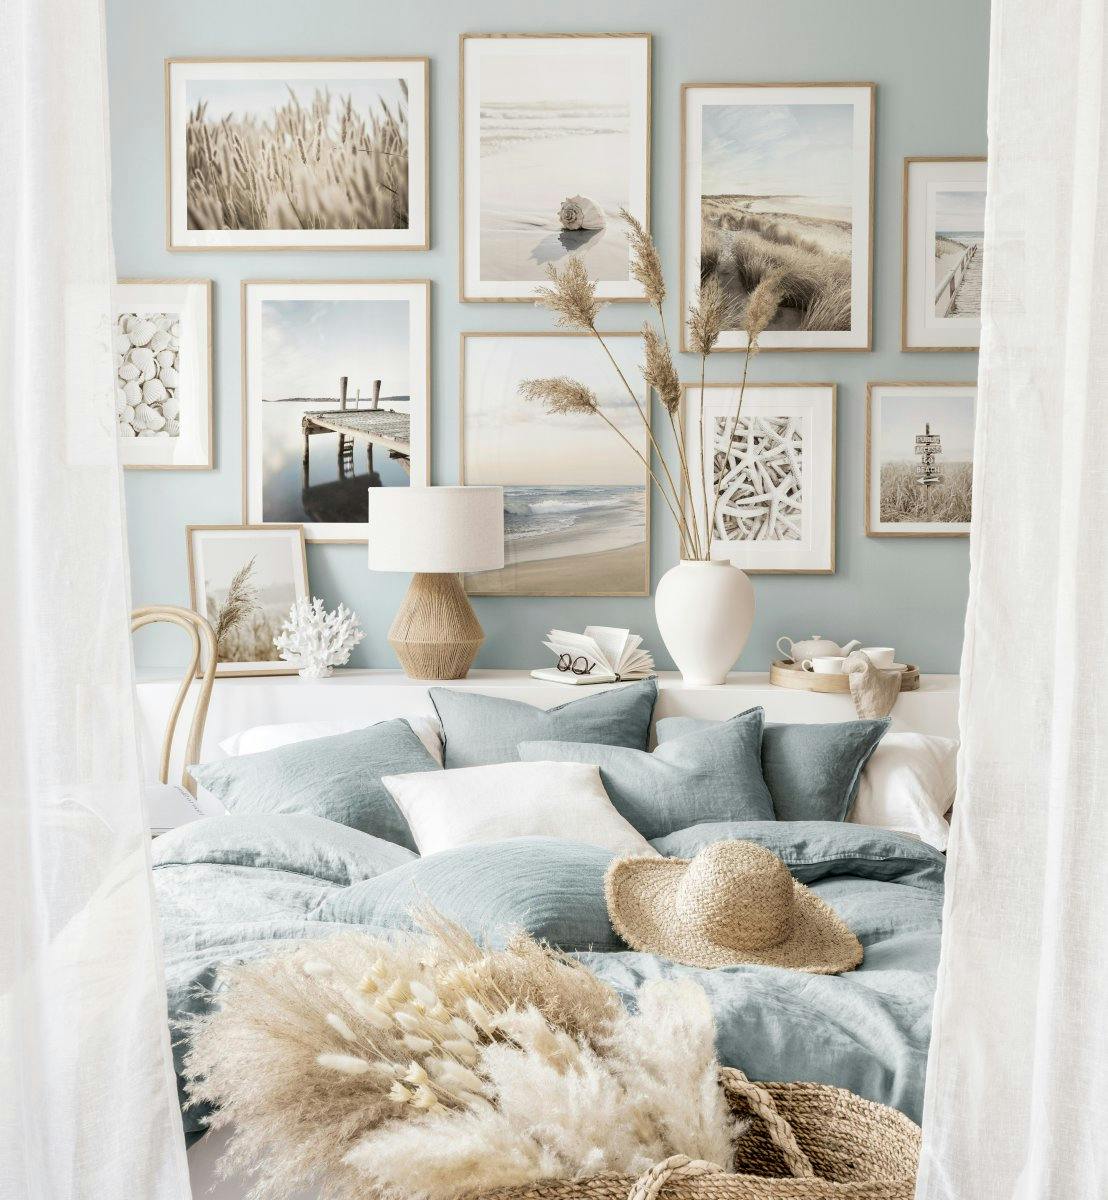 Parete della camera da letto decorata con poster oceano e spiaggie